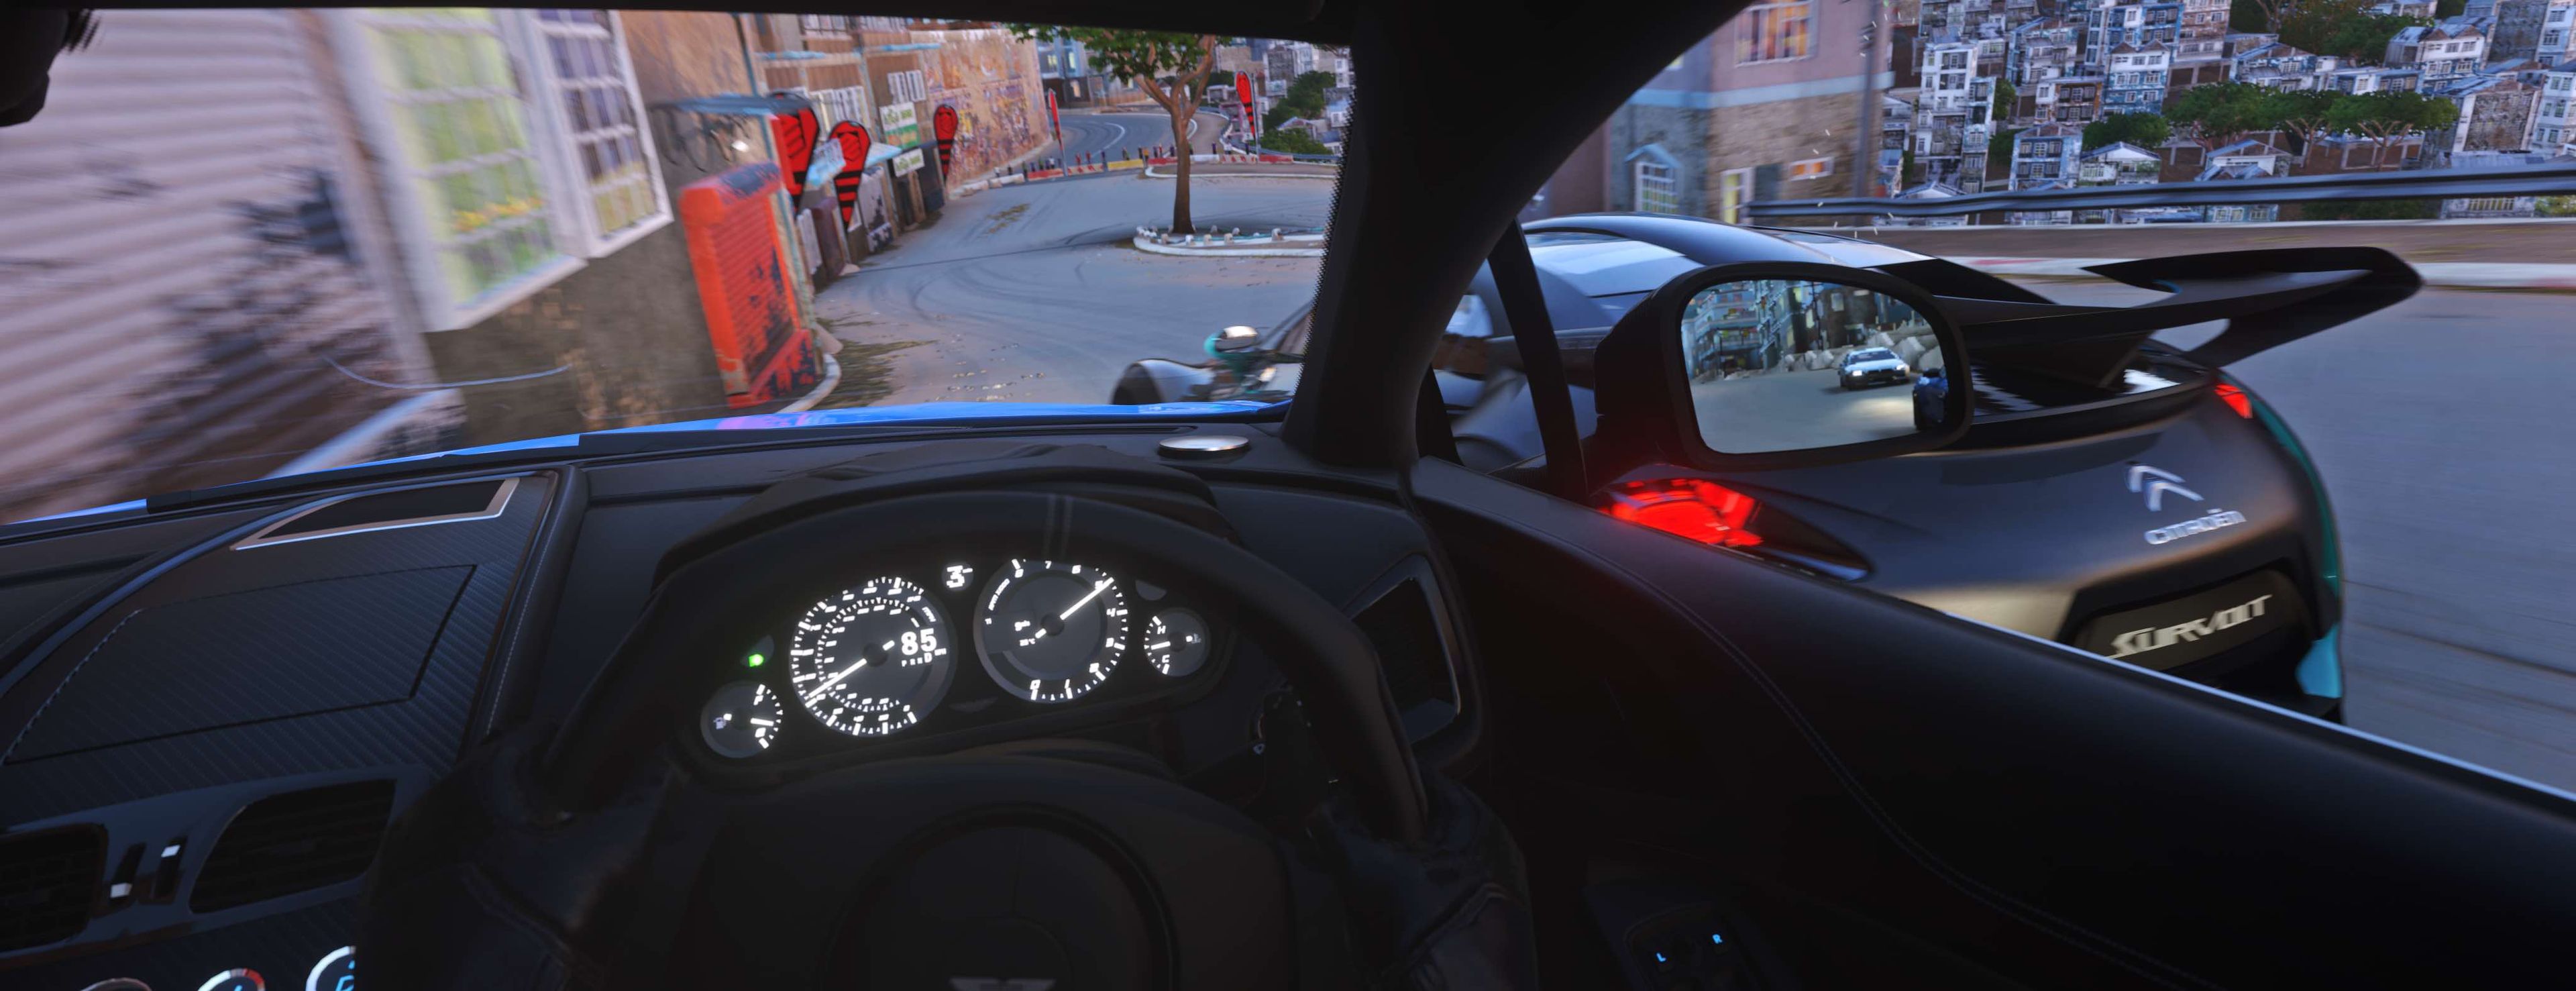 Driveclub VR nos permitirá seguir las intensas carreras desde el interior del vehículo, con todos sus elementos, como los retrovisores, operativos.